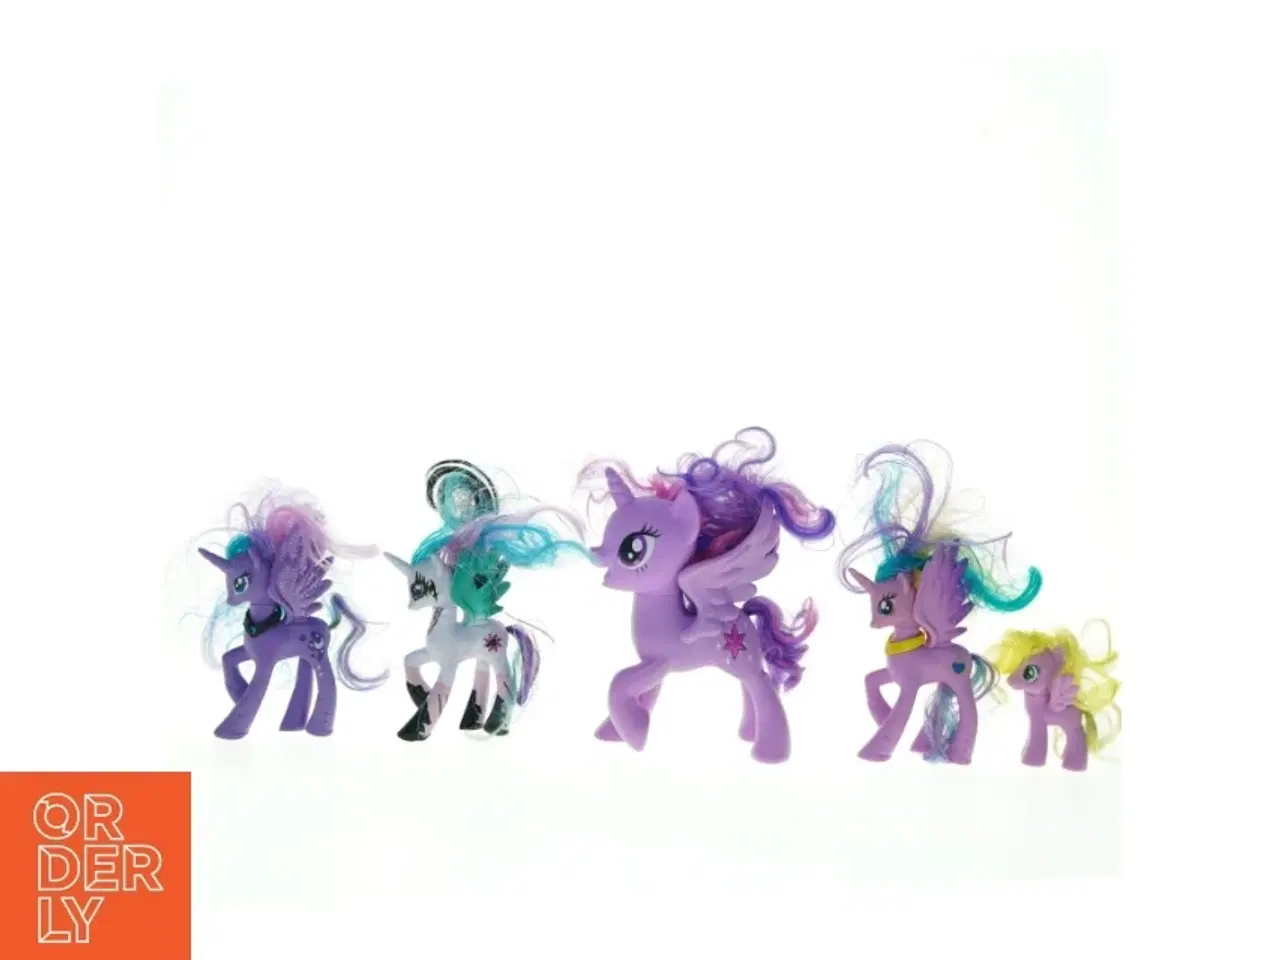 Billede 3 - My Little Pony figurer fra Hasbro (str. 8 til 17 cm høj)